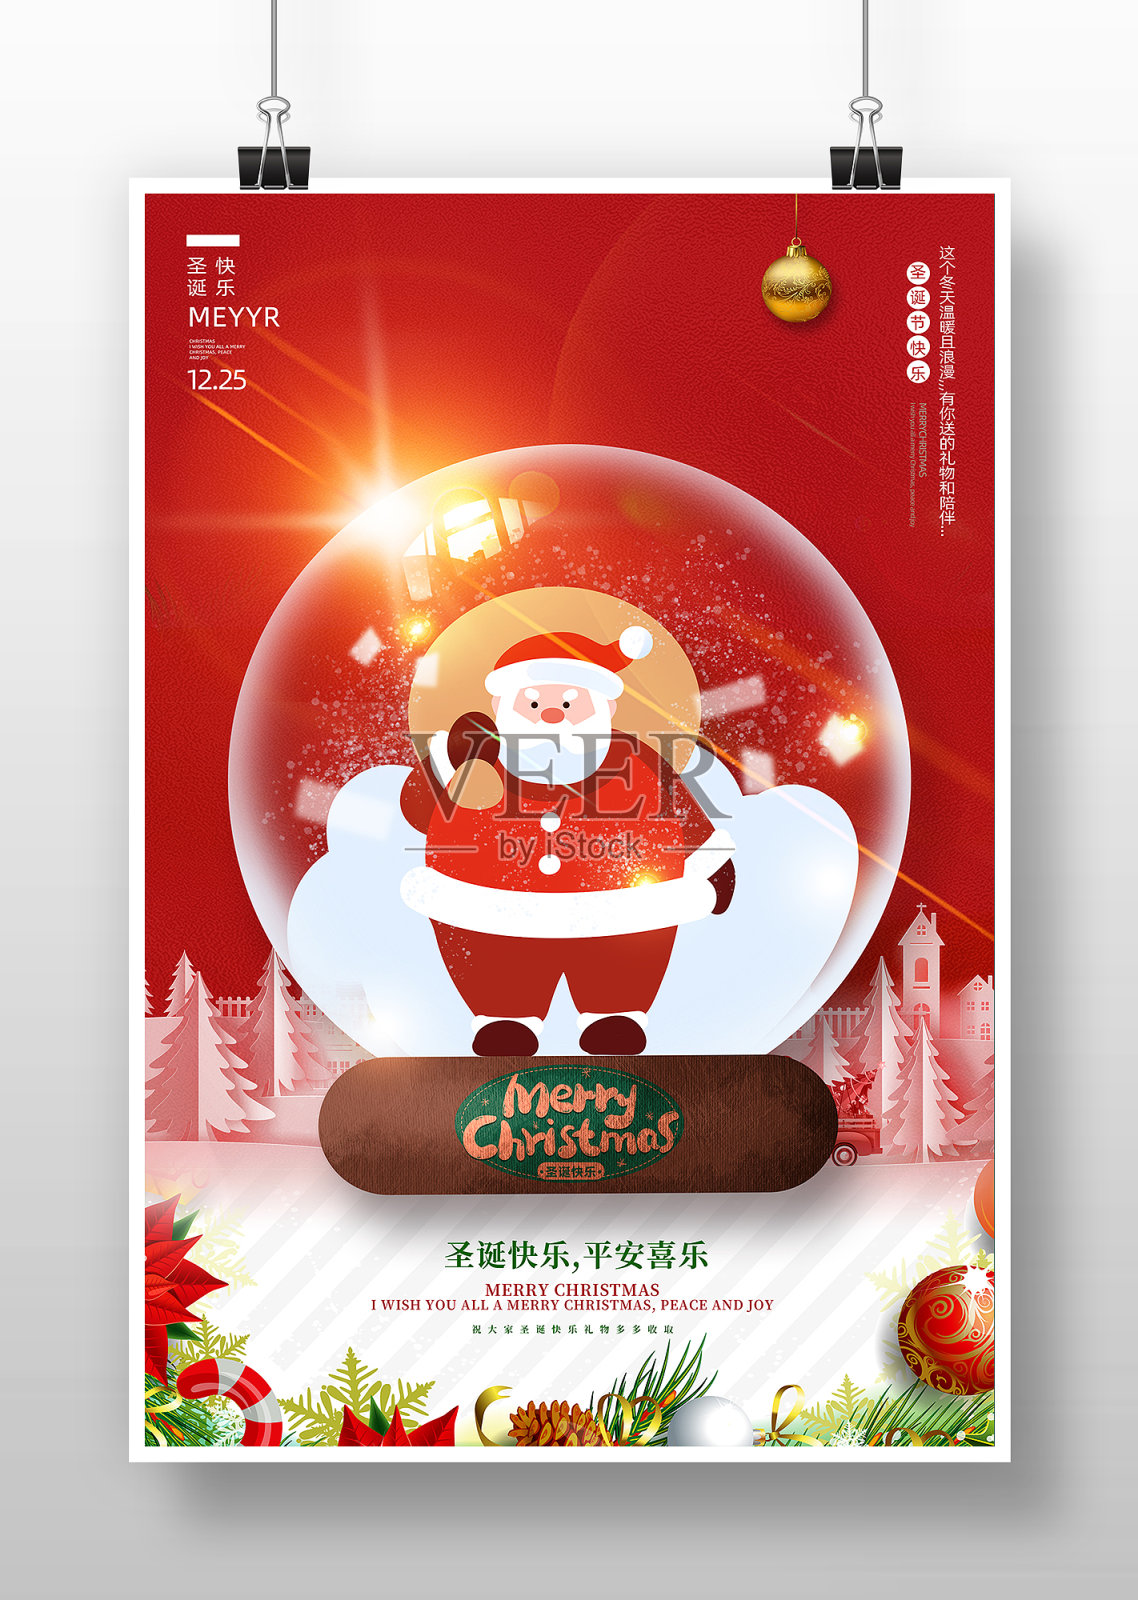 红色简约圣诞老人水晶球圣诞节快乐海报设计模板素材